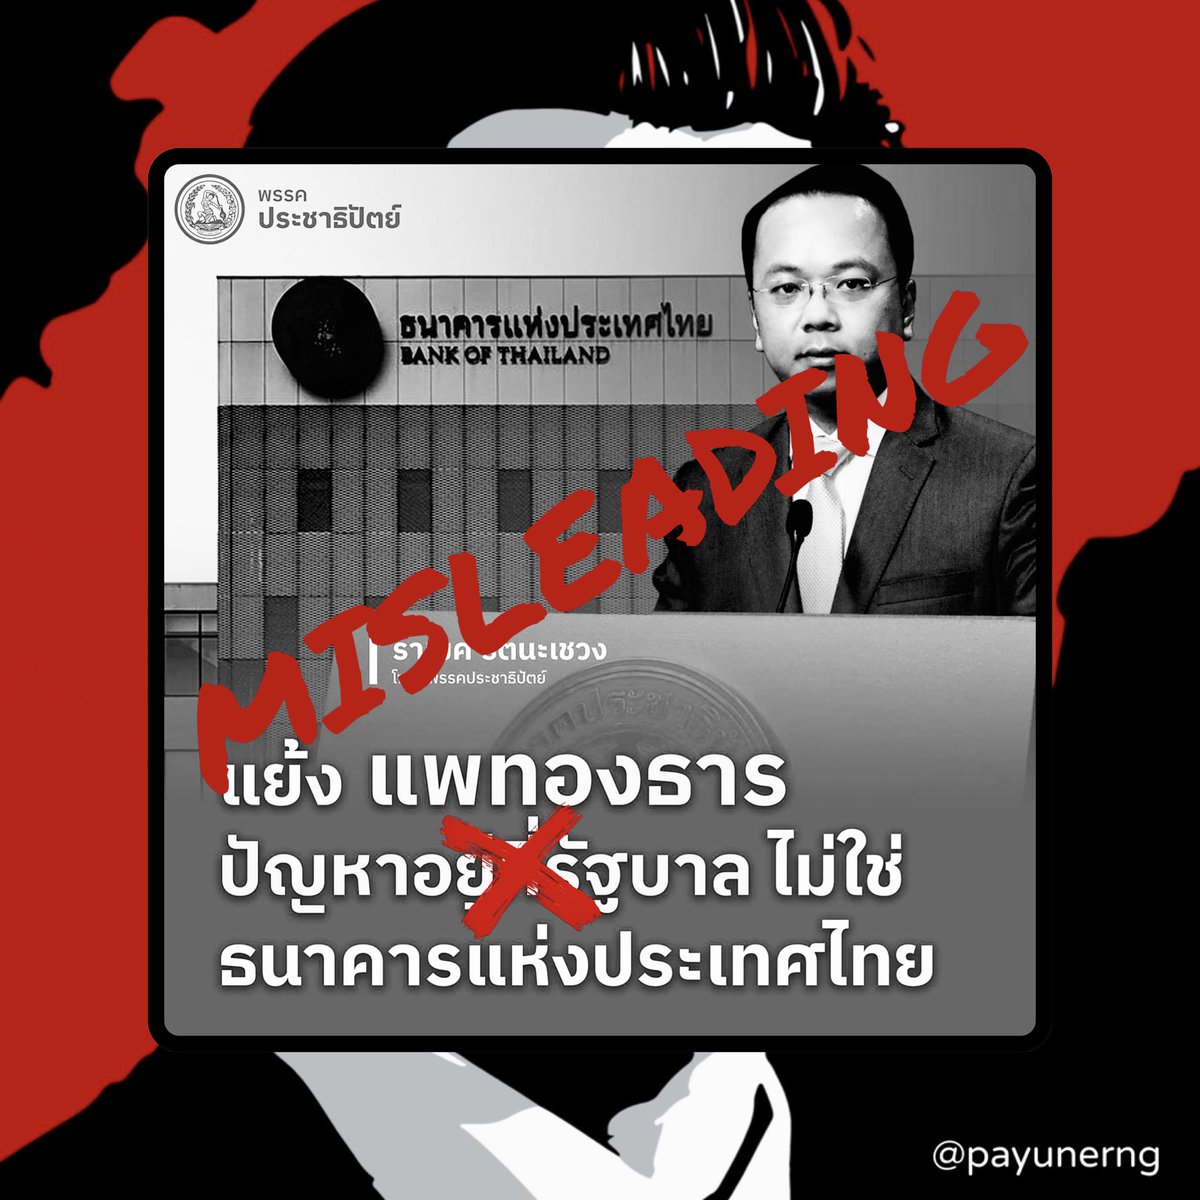 มุมมองส่วนตัว: สิ่งที่ คุณแพทองธาร ในฐานะหัวหน้าพรรคเพื่อไทยได้กล่าวไว้ในงาน “10 เดือนที่ไม่รอทำต่อให้เต็ม 10” ซึ่งได้มีการวิจารณ์ถึงการทำงานของ ธนาคารแห่งประเทศไทย (ธปท.) โดยมีใจความว่า “กฎหมายพยายามจะให้ธนาคารแห่งประเทศไทยเป็นอิสระจากรัฐบาล…